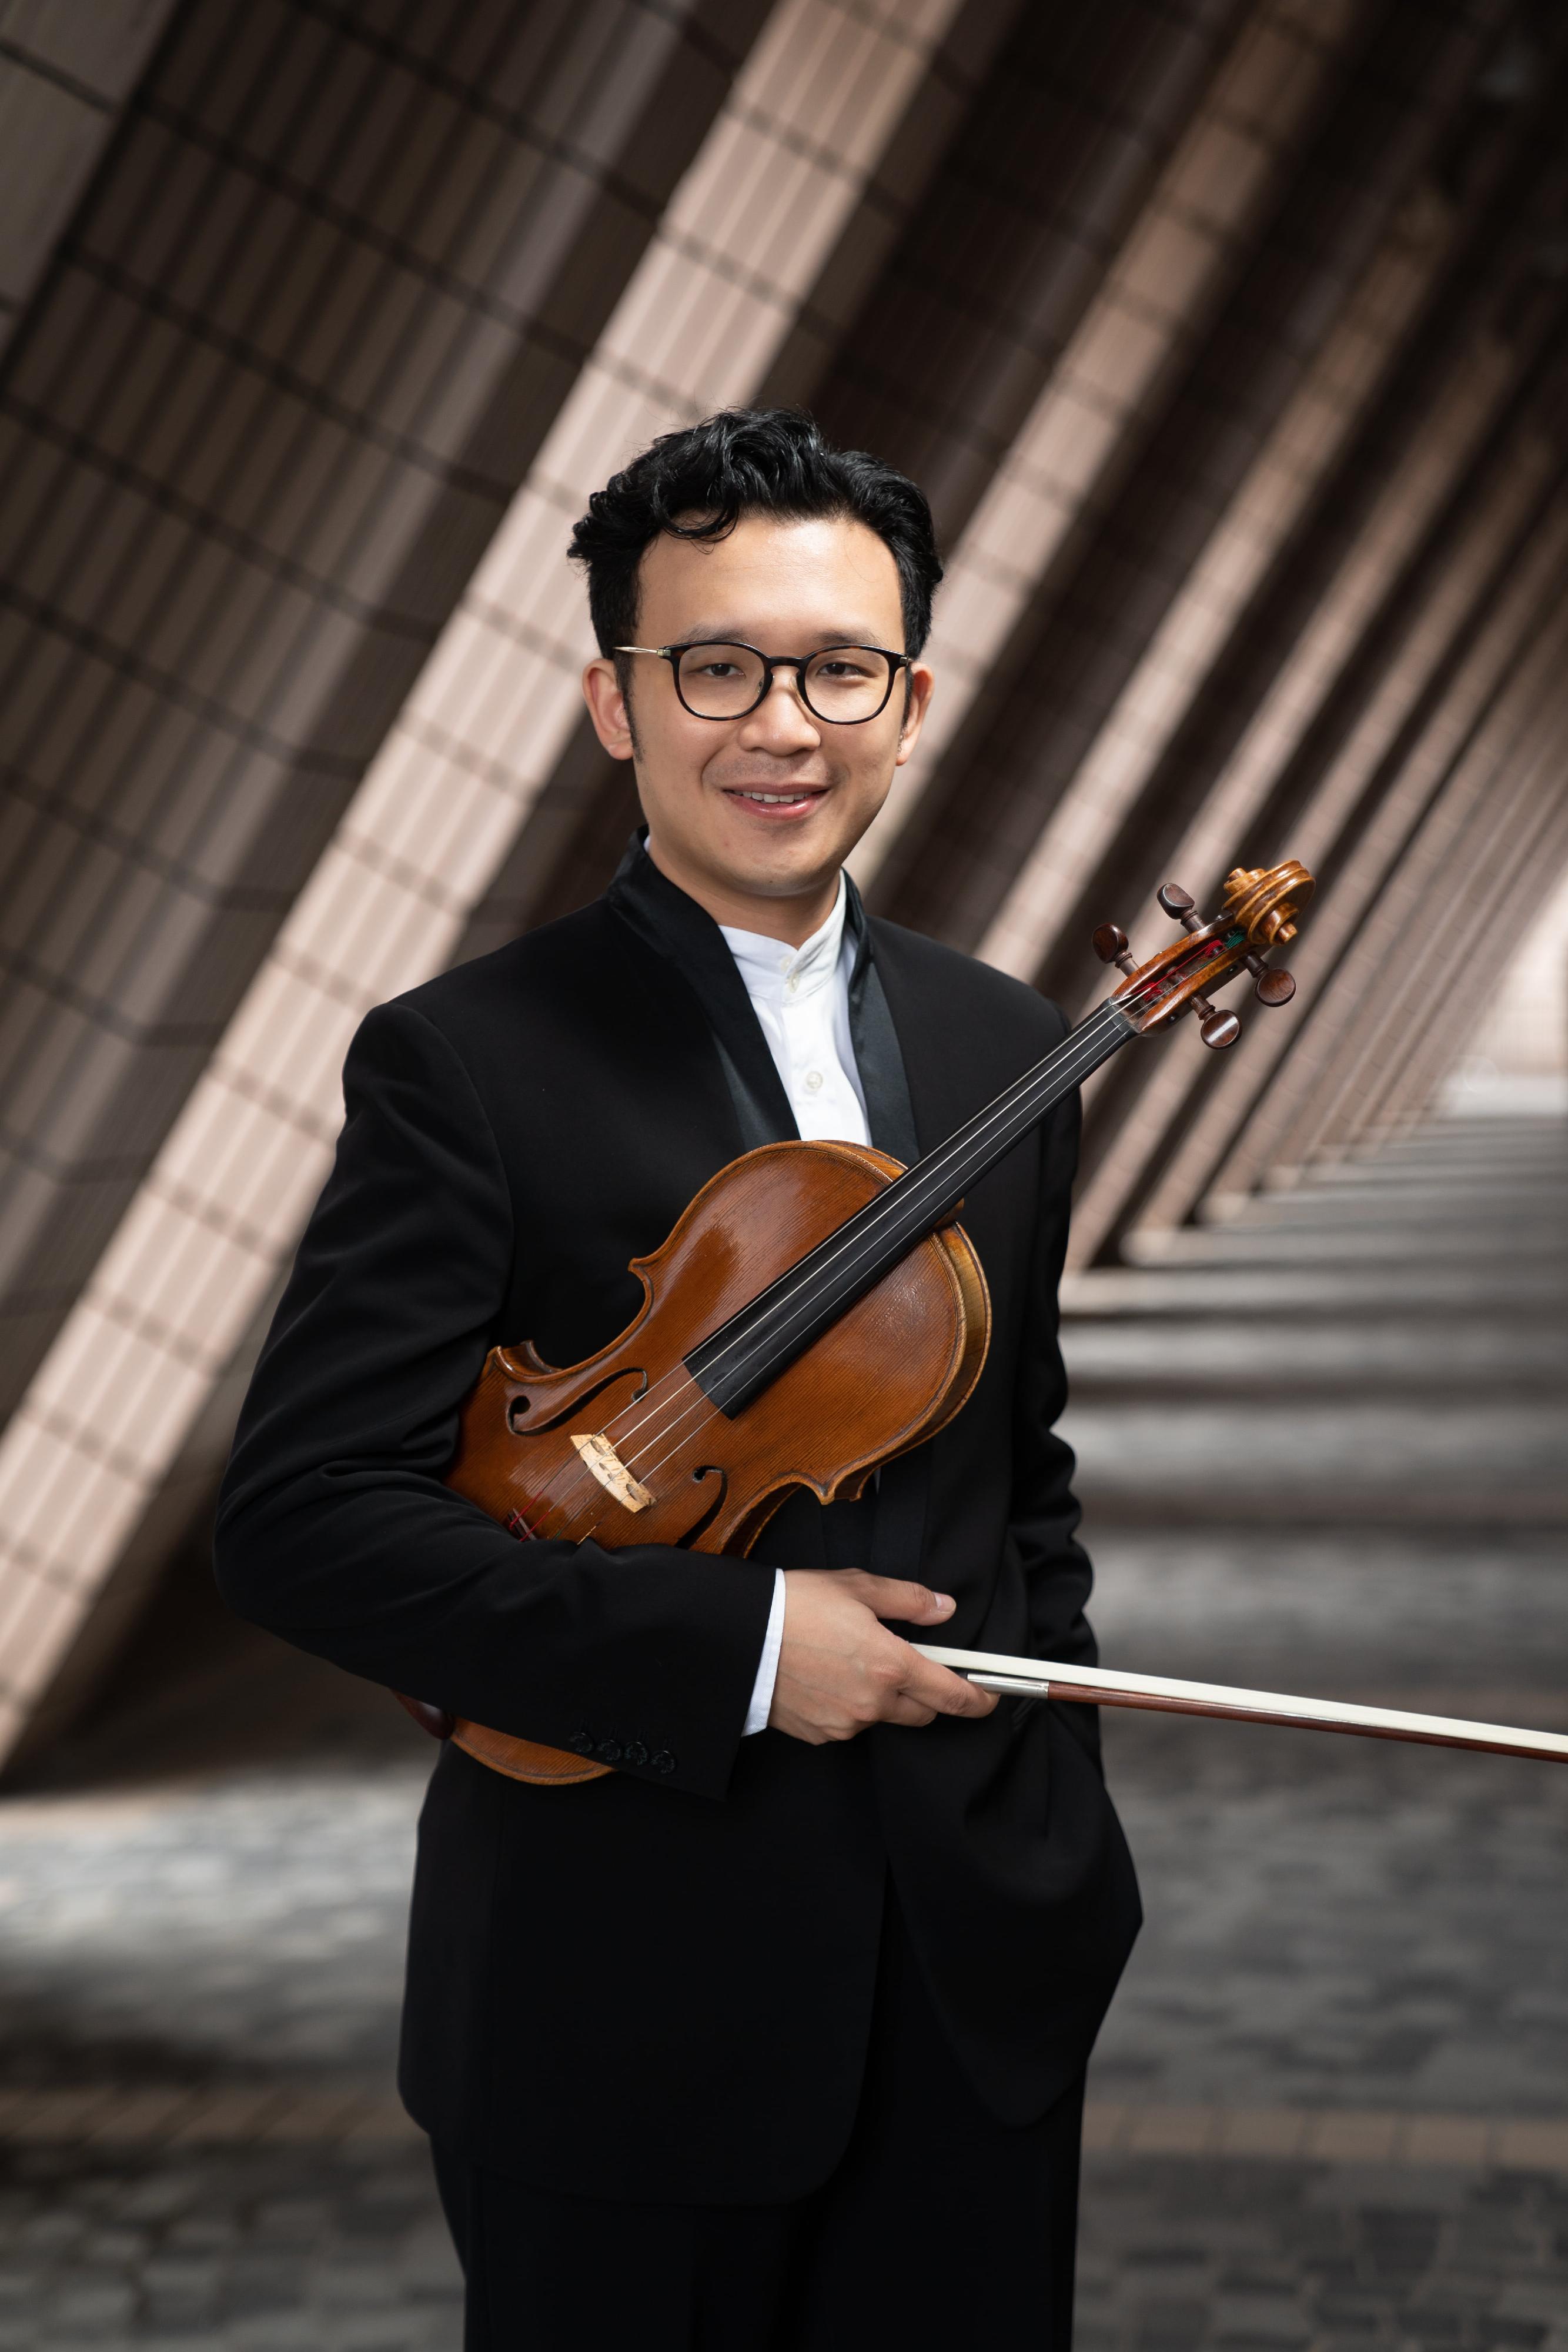 康樂及文化事務署十月初呈獻《古典•今作》演奏會。圖為小提琴家凌顯祐。